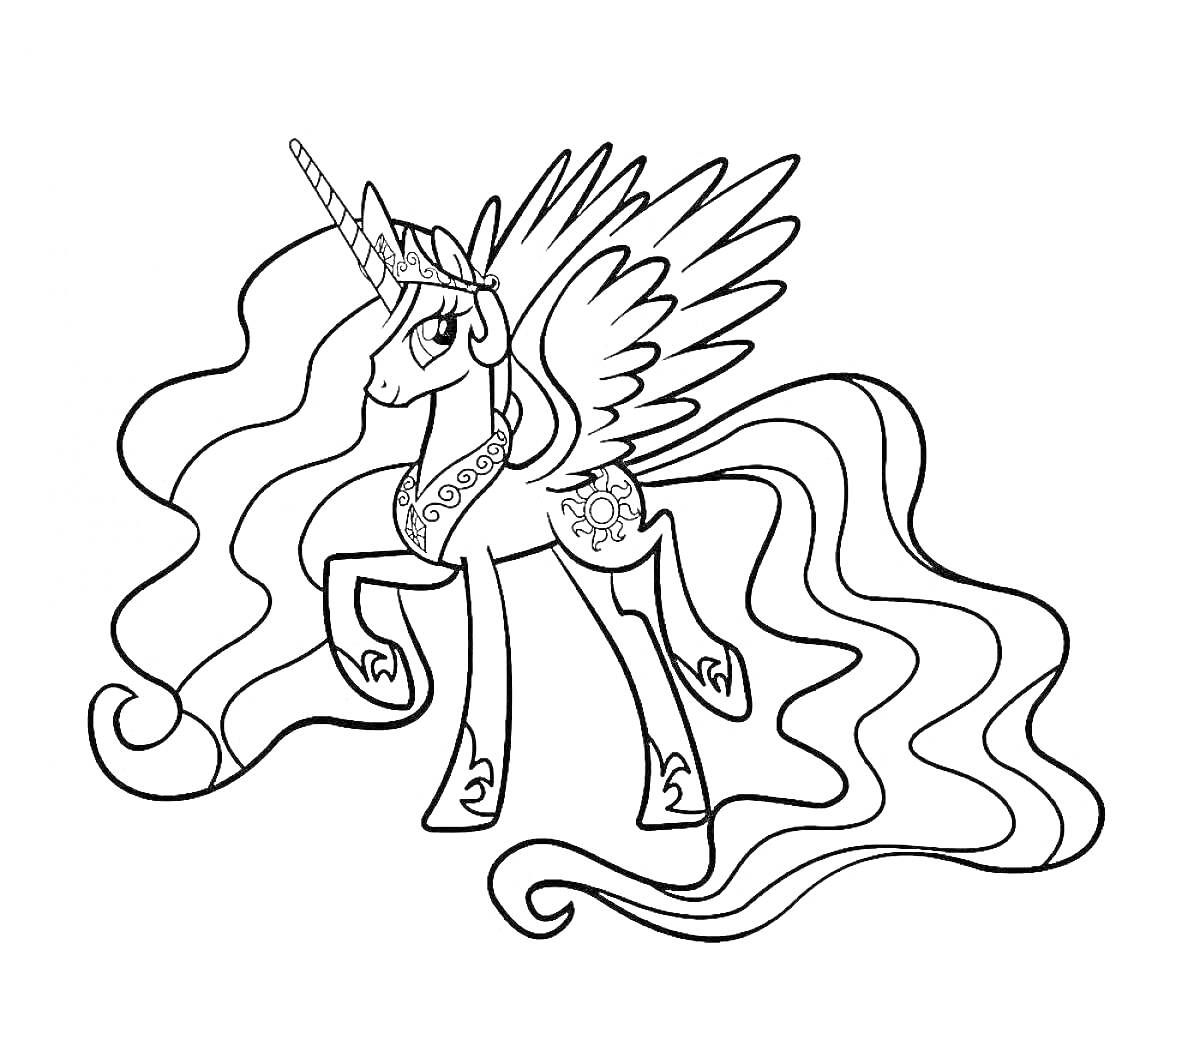 Пони с длинной гривой, крыльями и короной на голове, изображение включает магический рог и узор солнца на боку